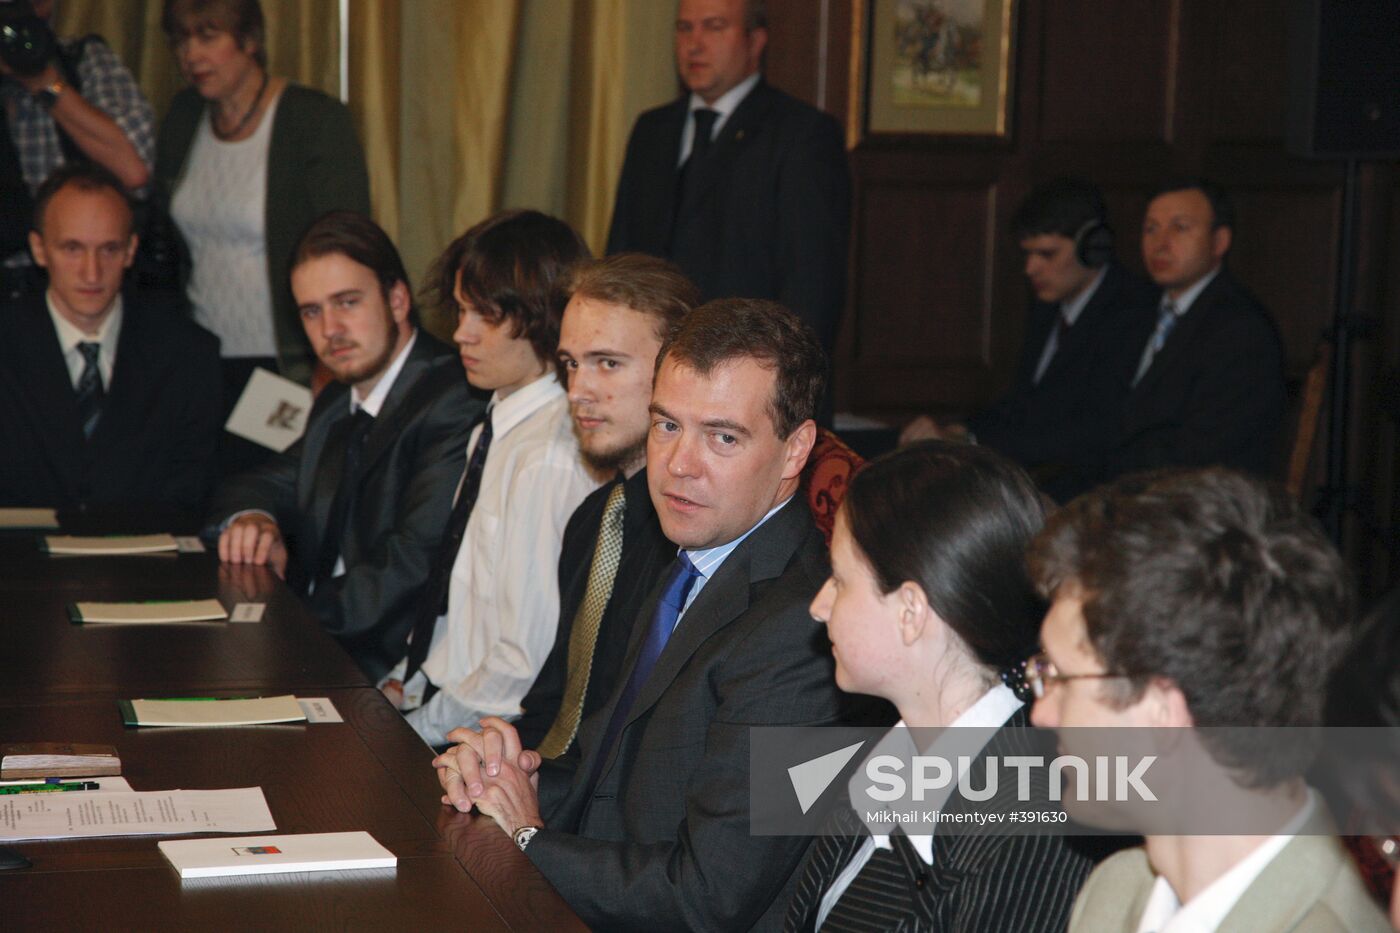 Dmitry Medvedev meeting with ACM-ICPC winners